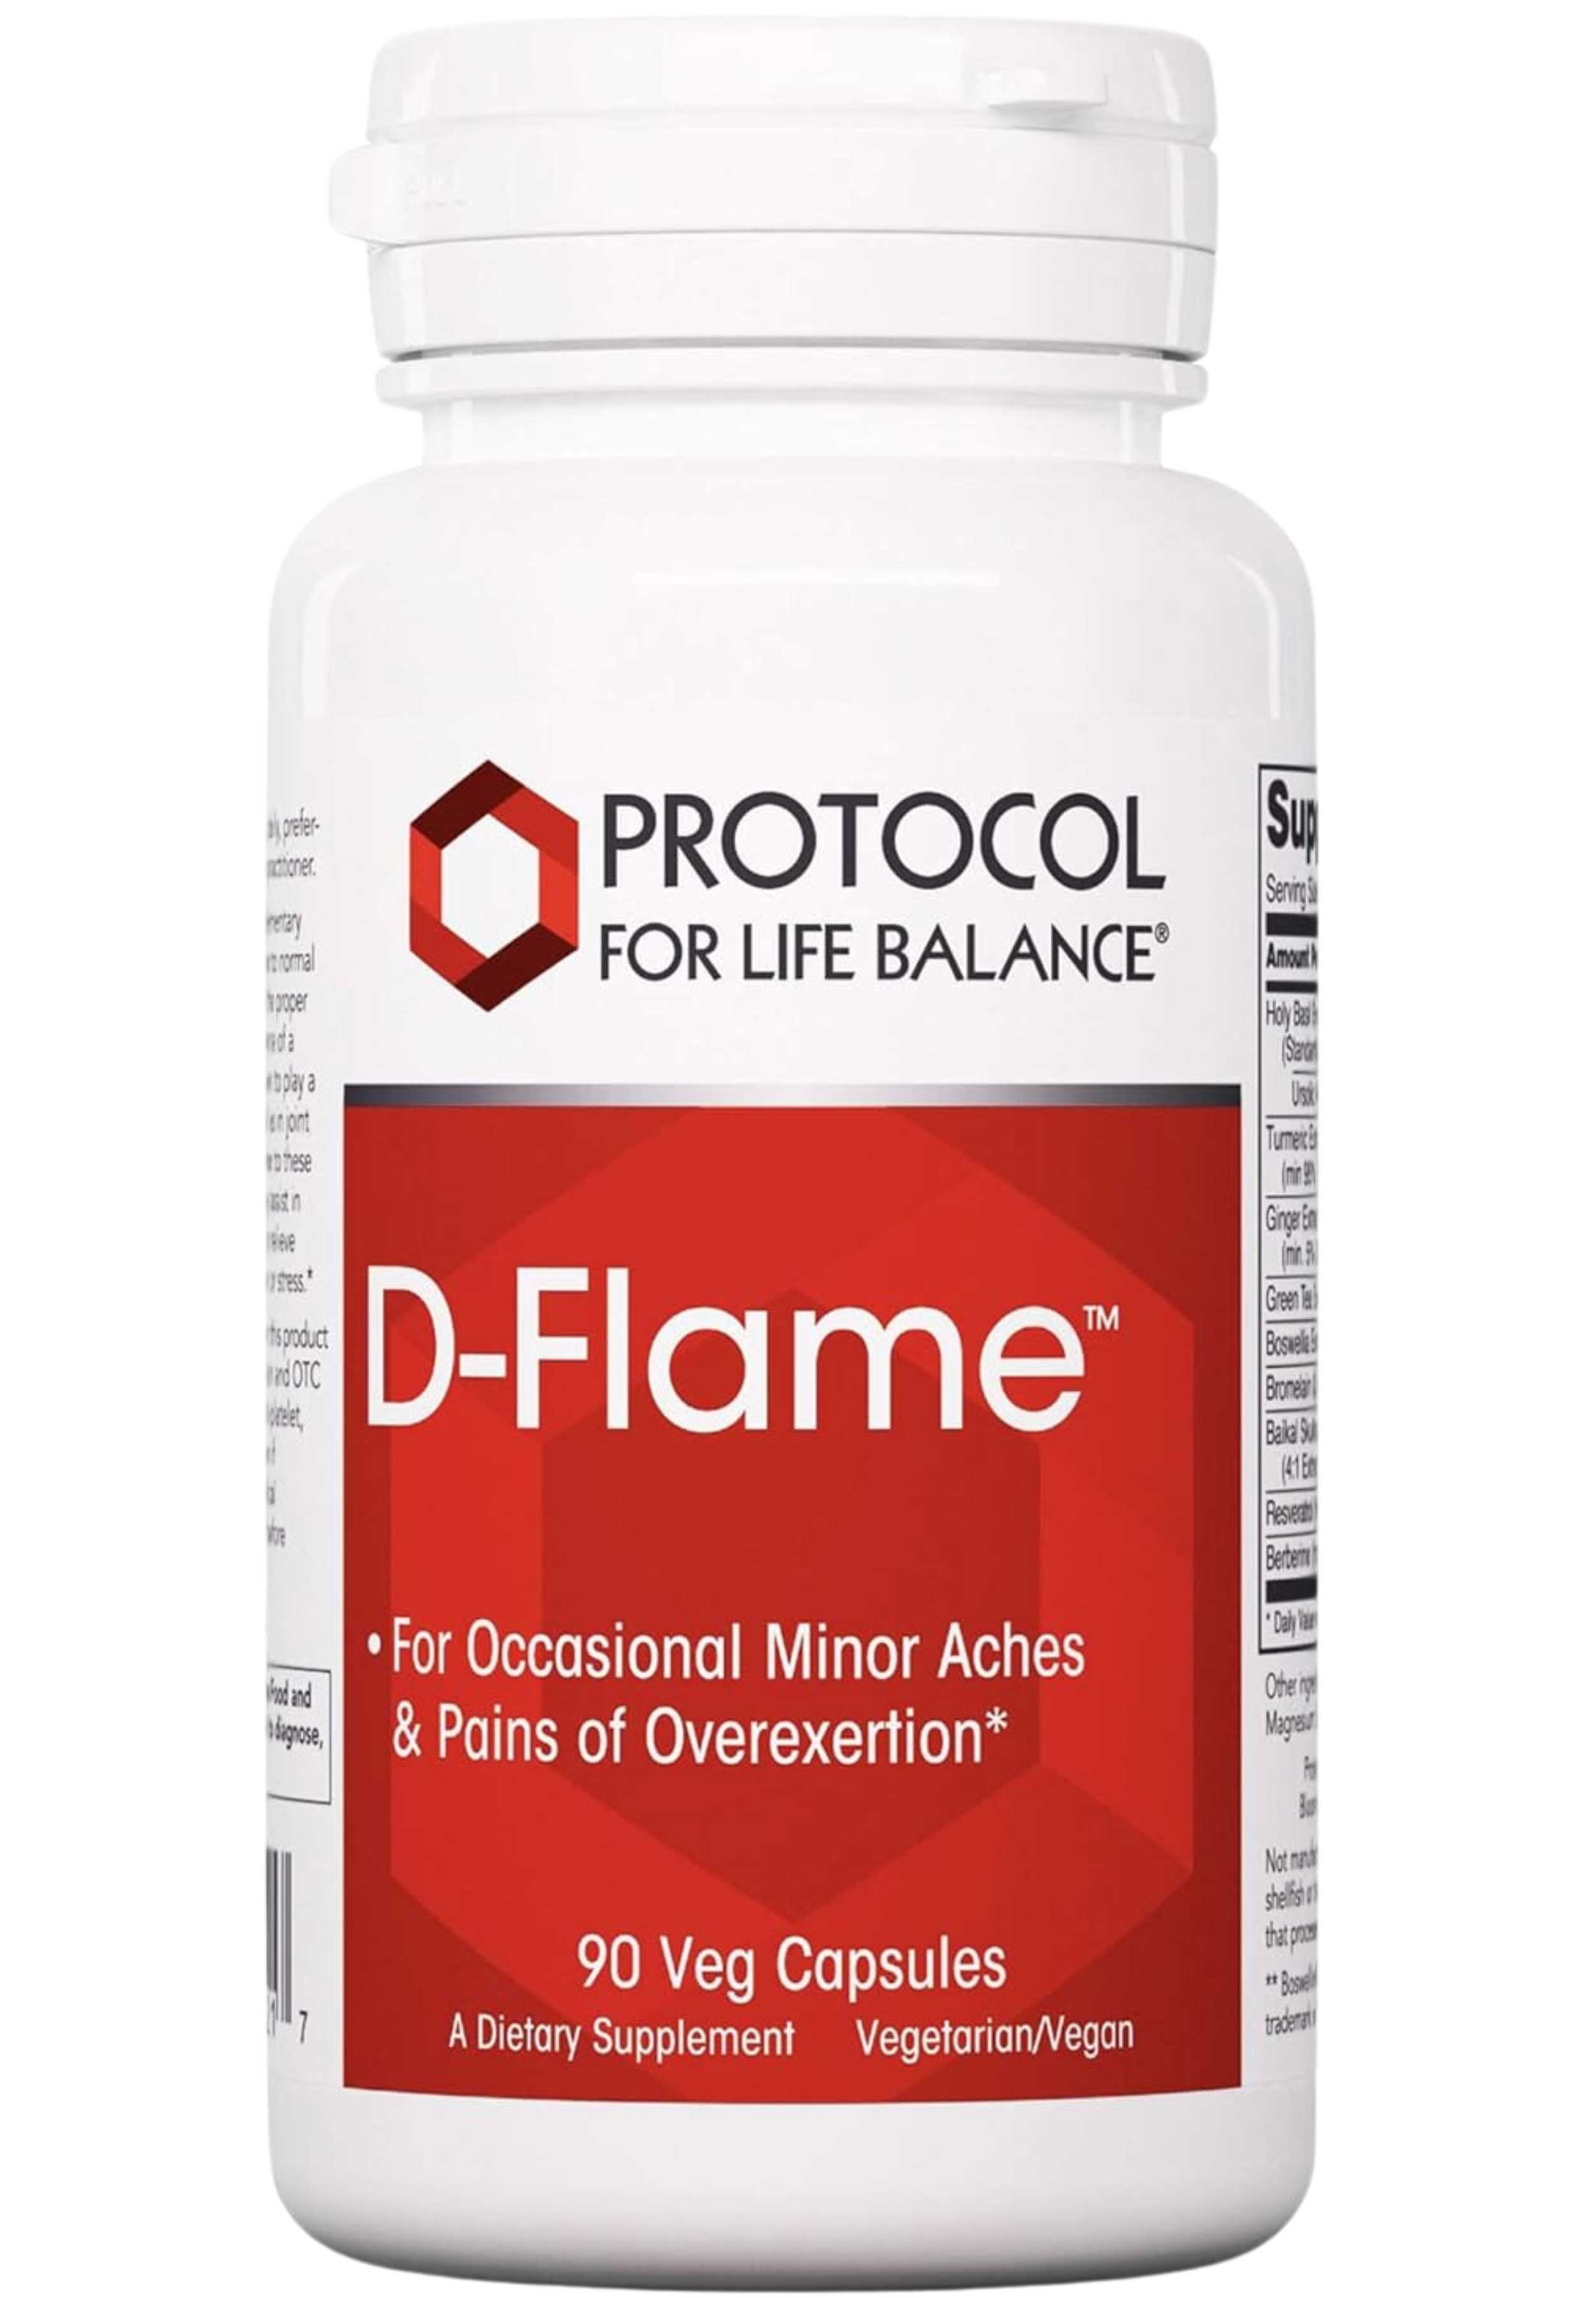 Protocol for Life Balance D-Flame